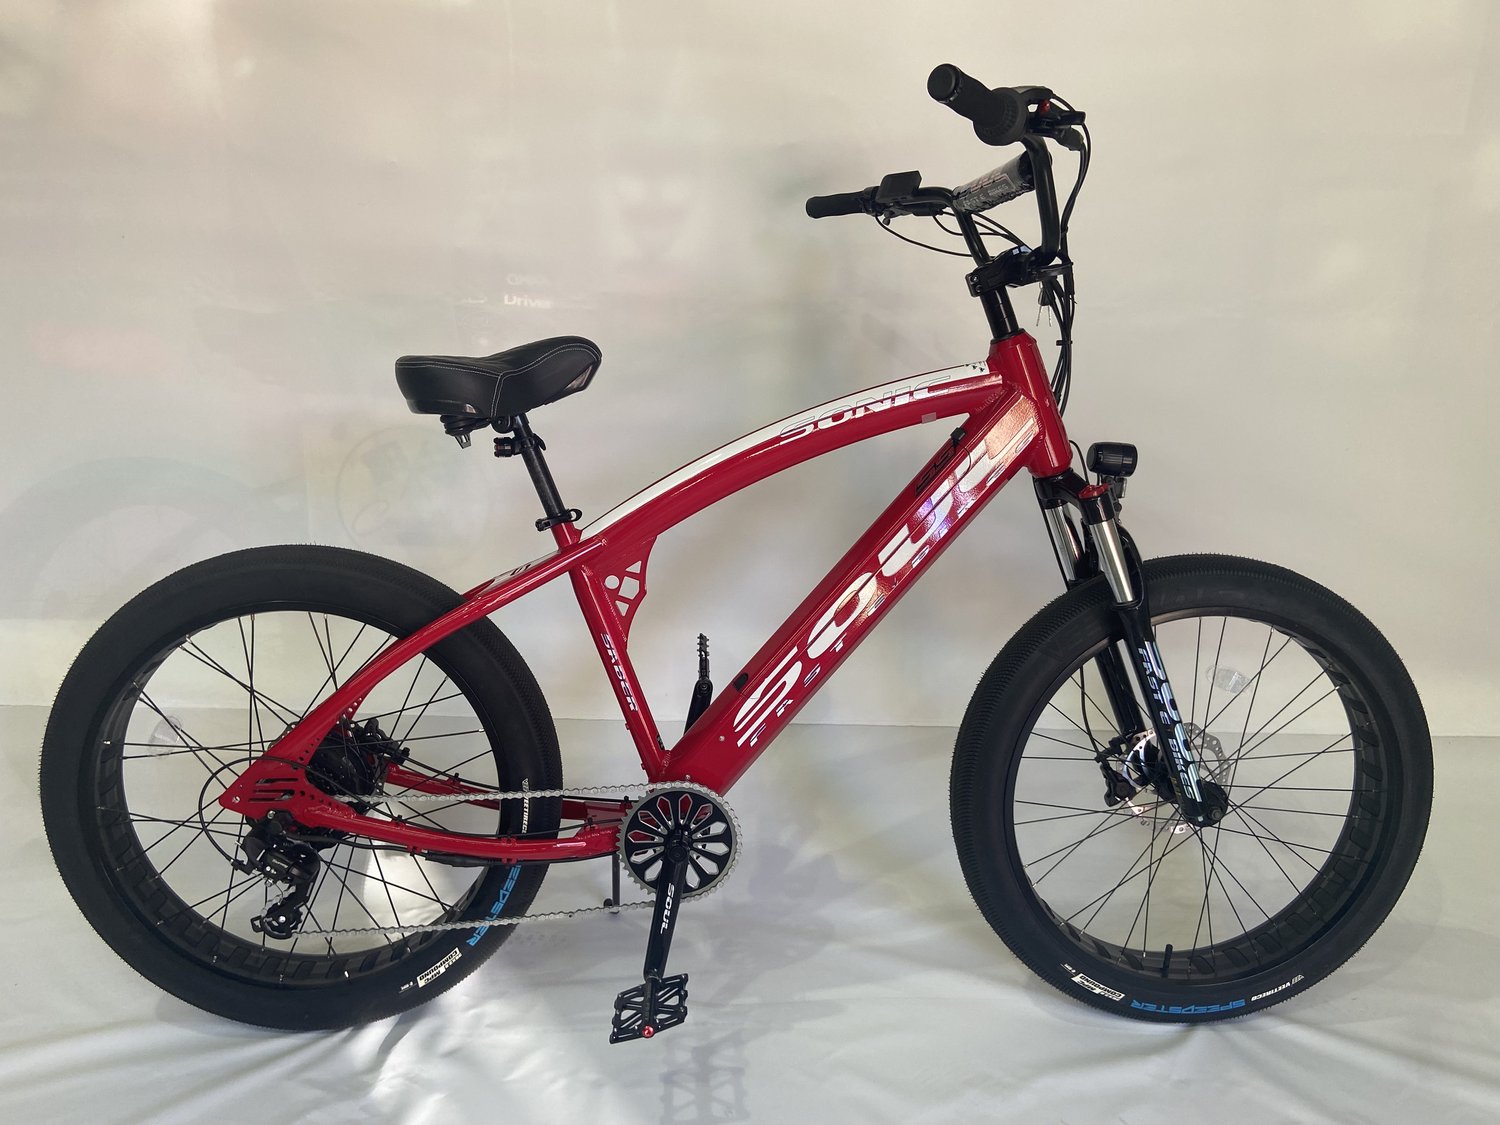 Saber Pro SS — Justus E-bikes